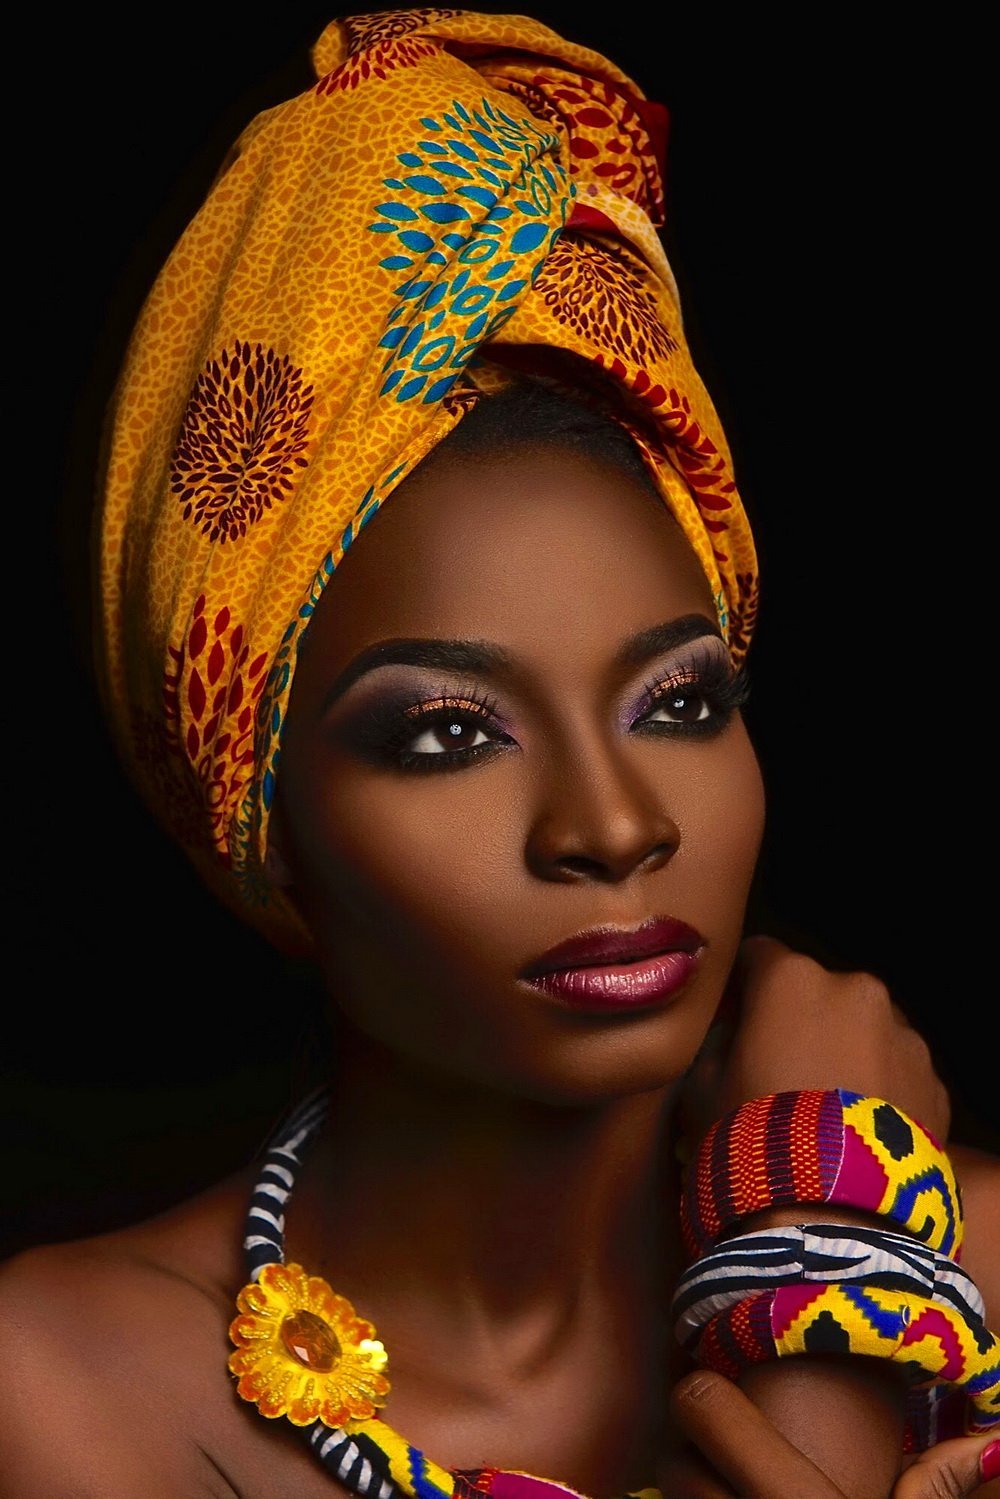 Бесплатные фото негритянок. Красивые африканки. Африканские женщины. Африканский макияж. Красивые африканские девушки.